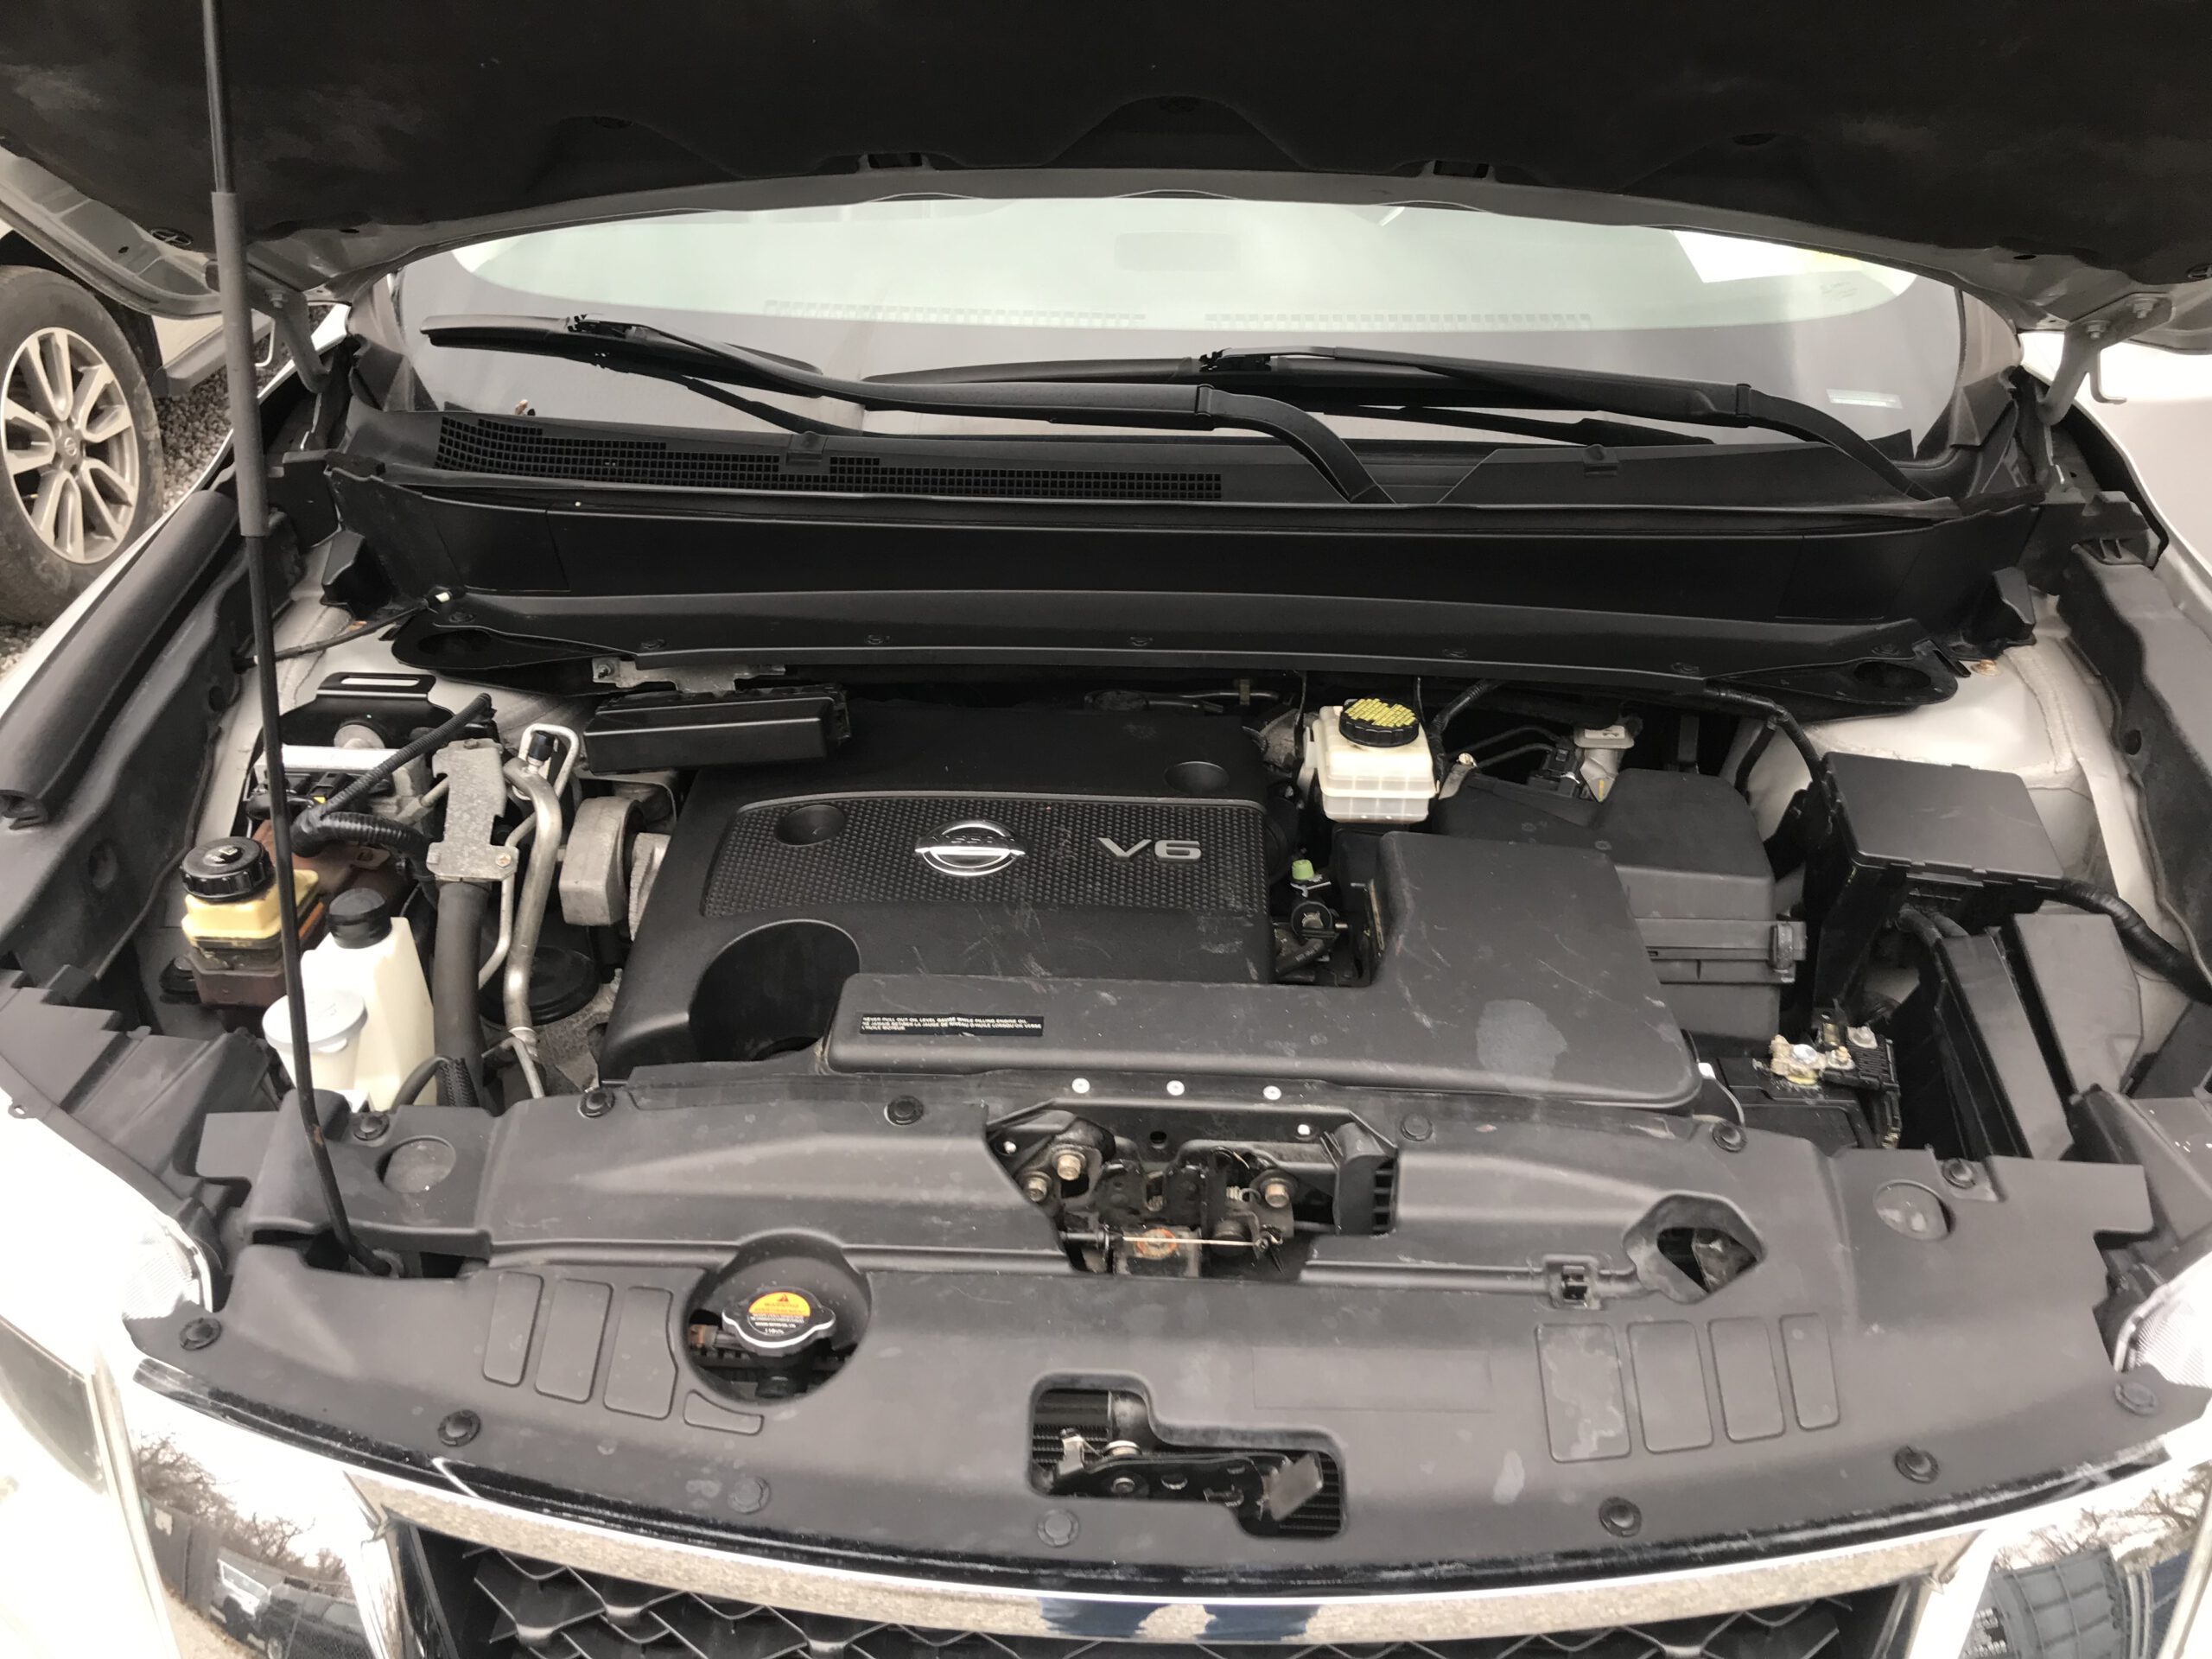 2014 Nissan Pathfinder 4WD 3rd row seating, runs and drives, no visible damage, 87K $6,999 full